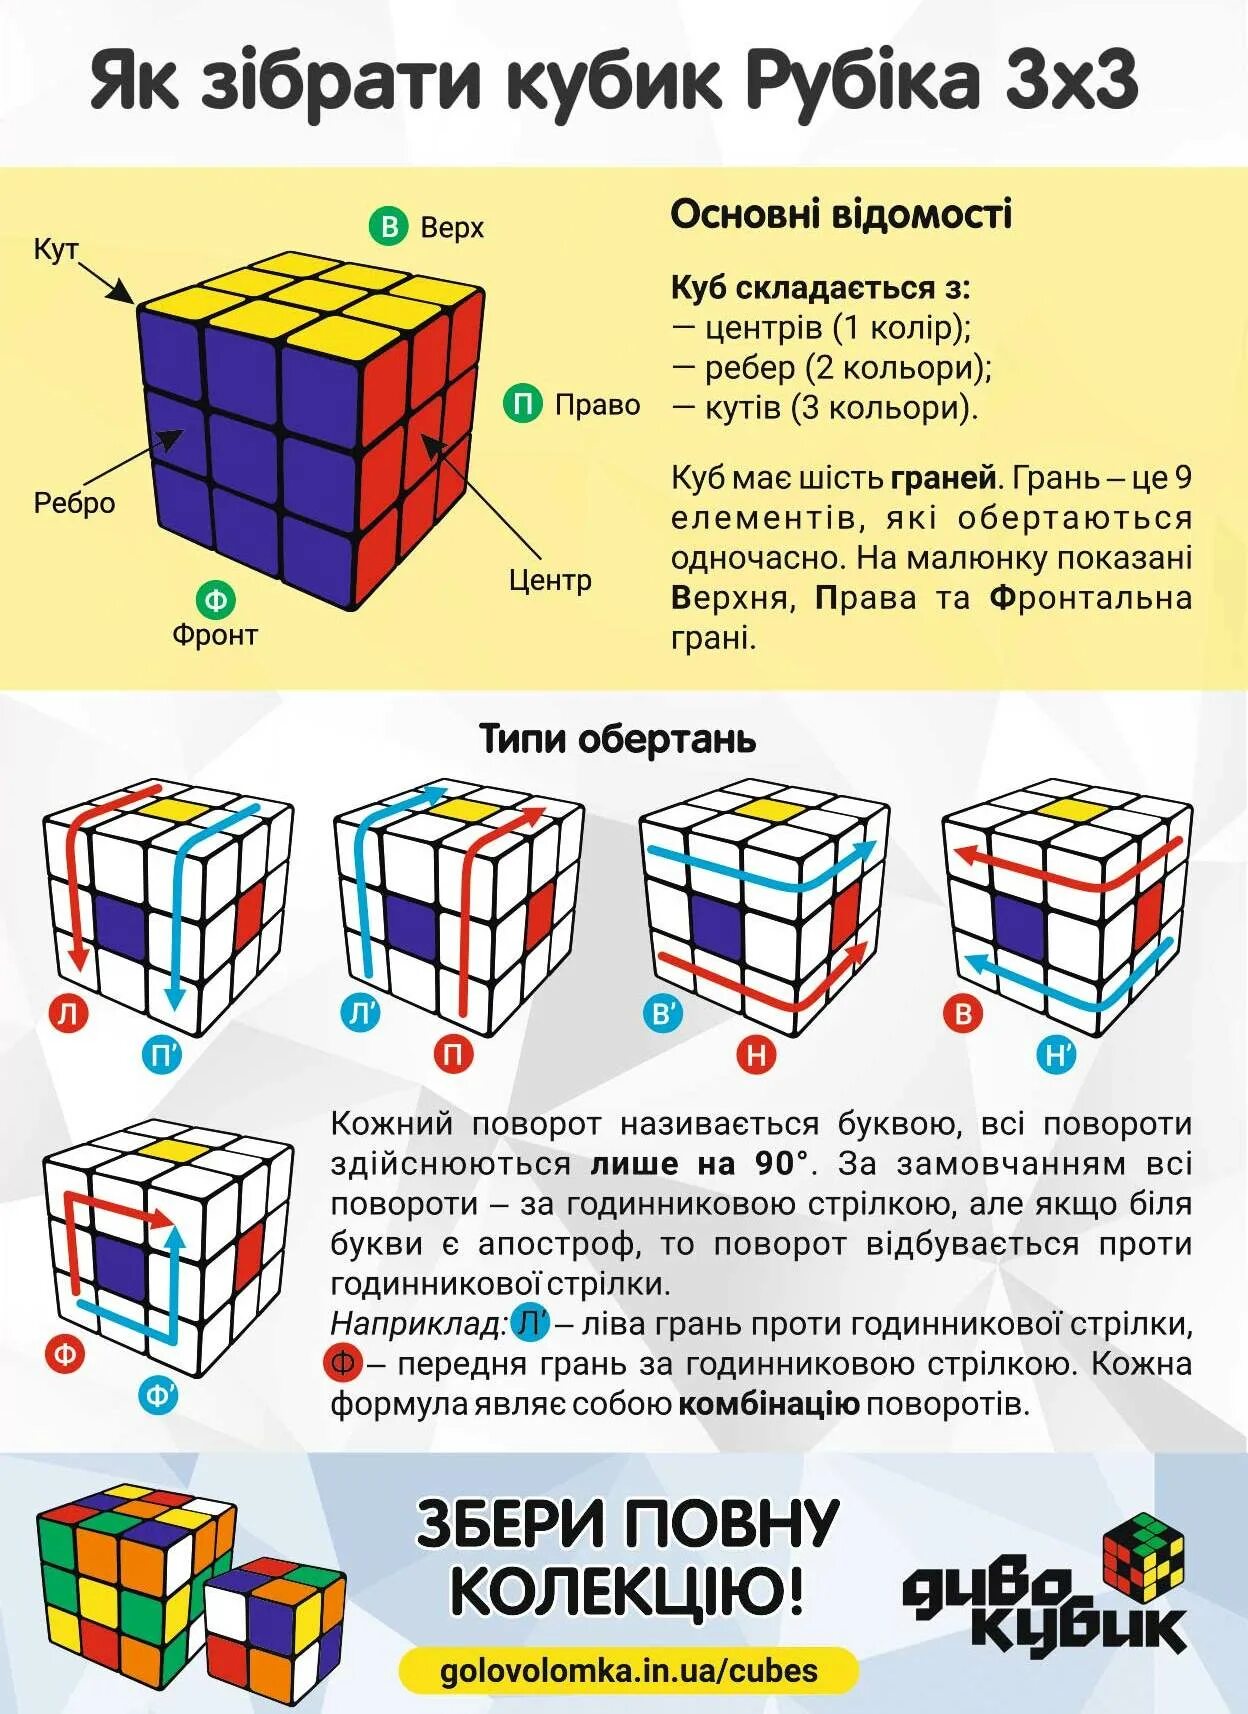 Как сделать в комбинация кубов. Схема сборки кубика Рубика 3х3 для начинающих. Комбинации кубика Рубика 3х3. Комбинации сборки кубика Рубика 3х3. Формулы кубика Рубика 3х3 для начинающих.